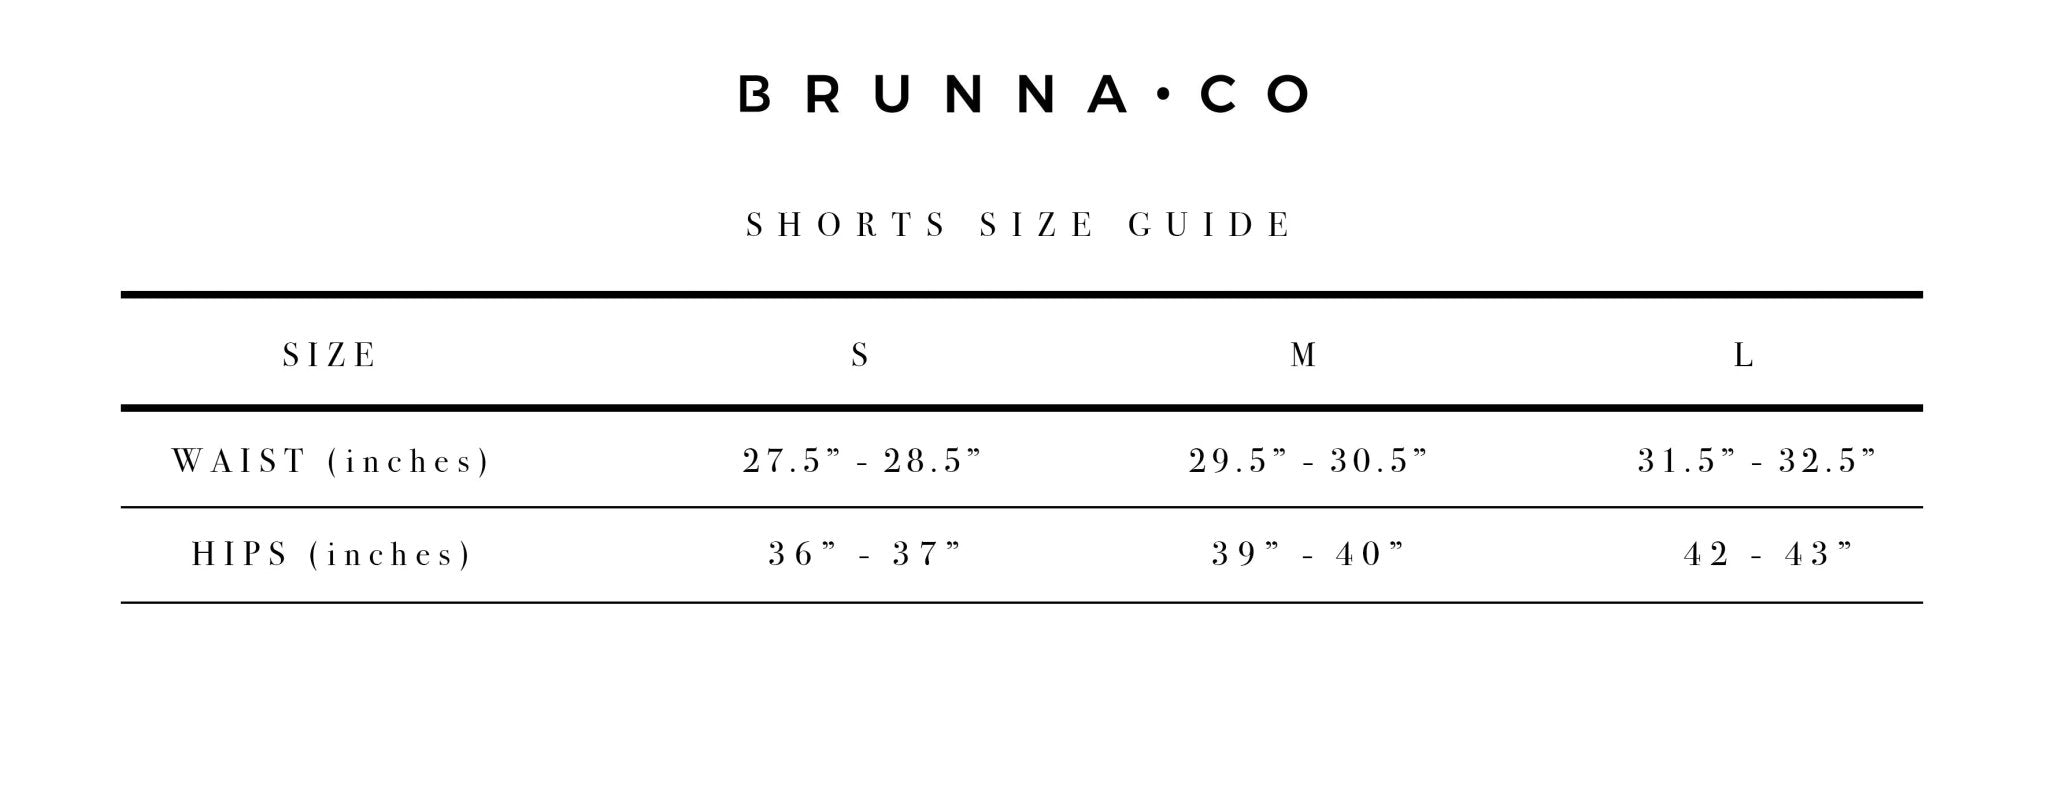 GIRL Seaside Runner Bamboo Shorts, in Desert Rose - Premium  from BrunnaCo - Just $59.50! Shop now at ZLA